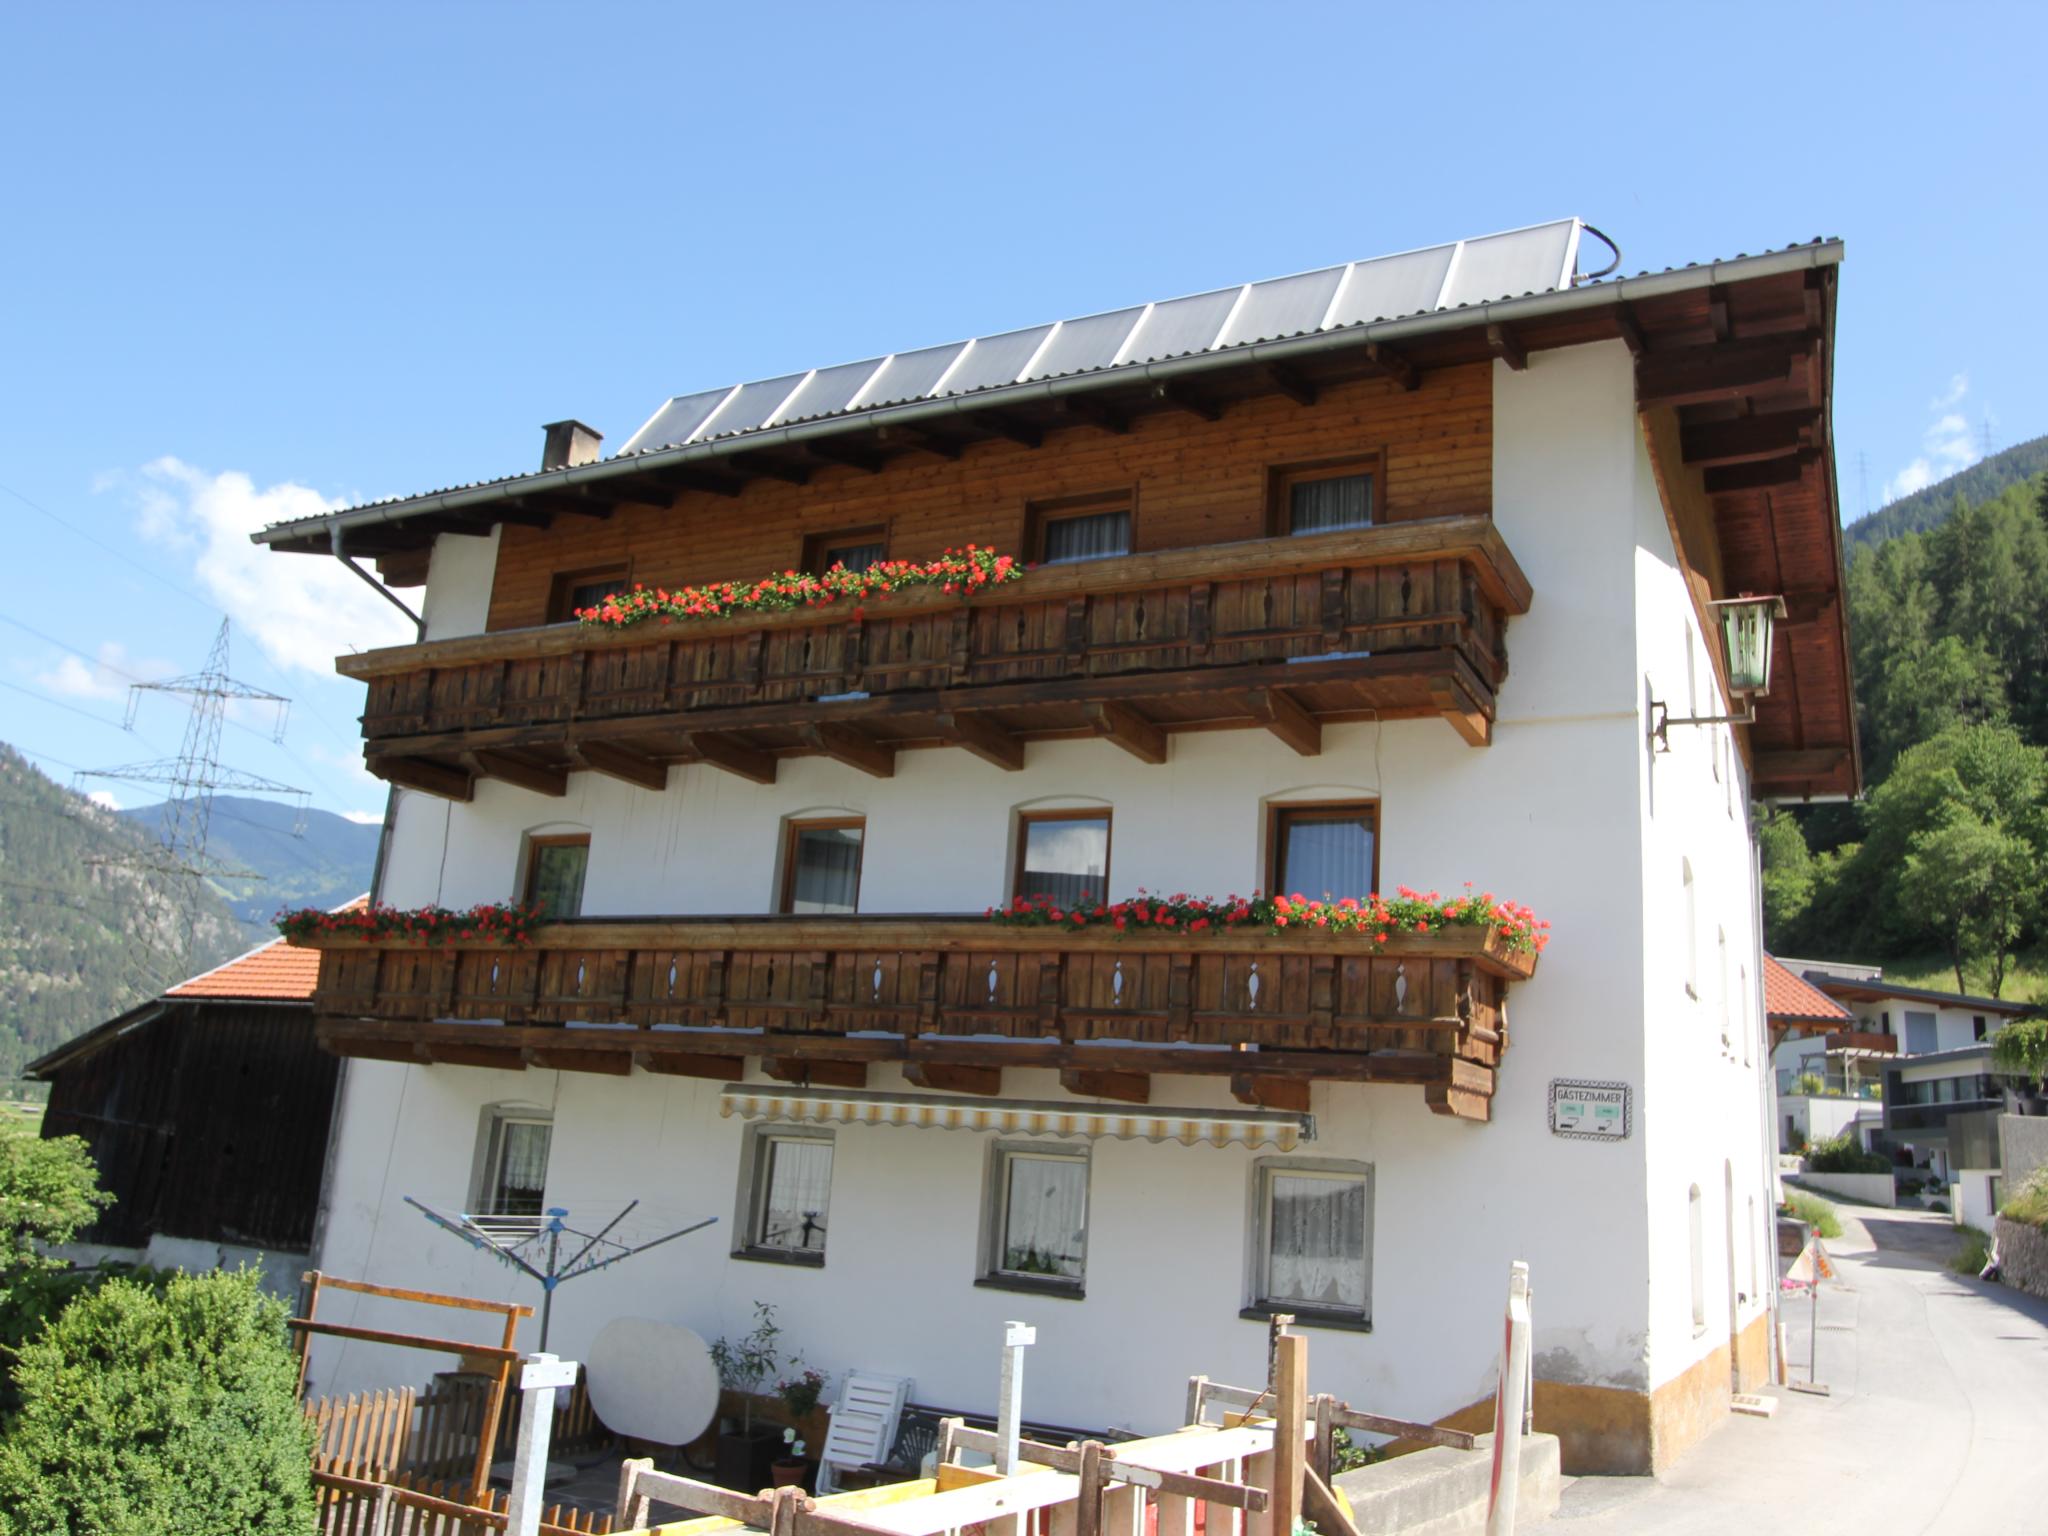 Erhart 2 Tirol